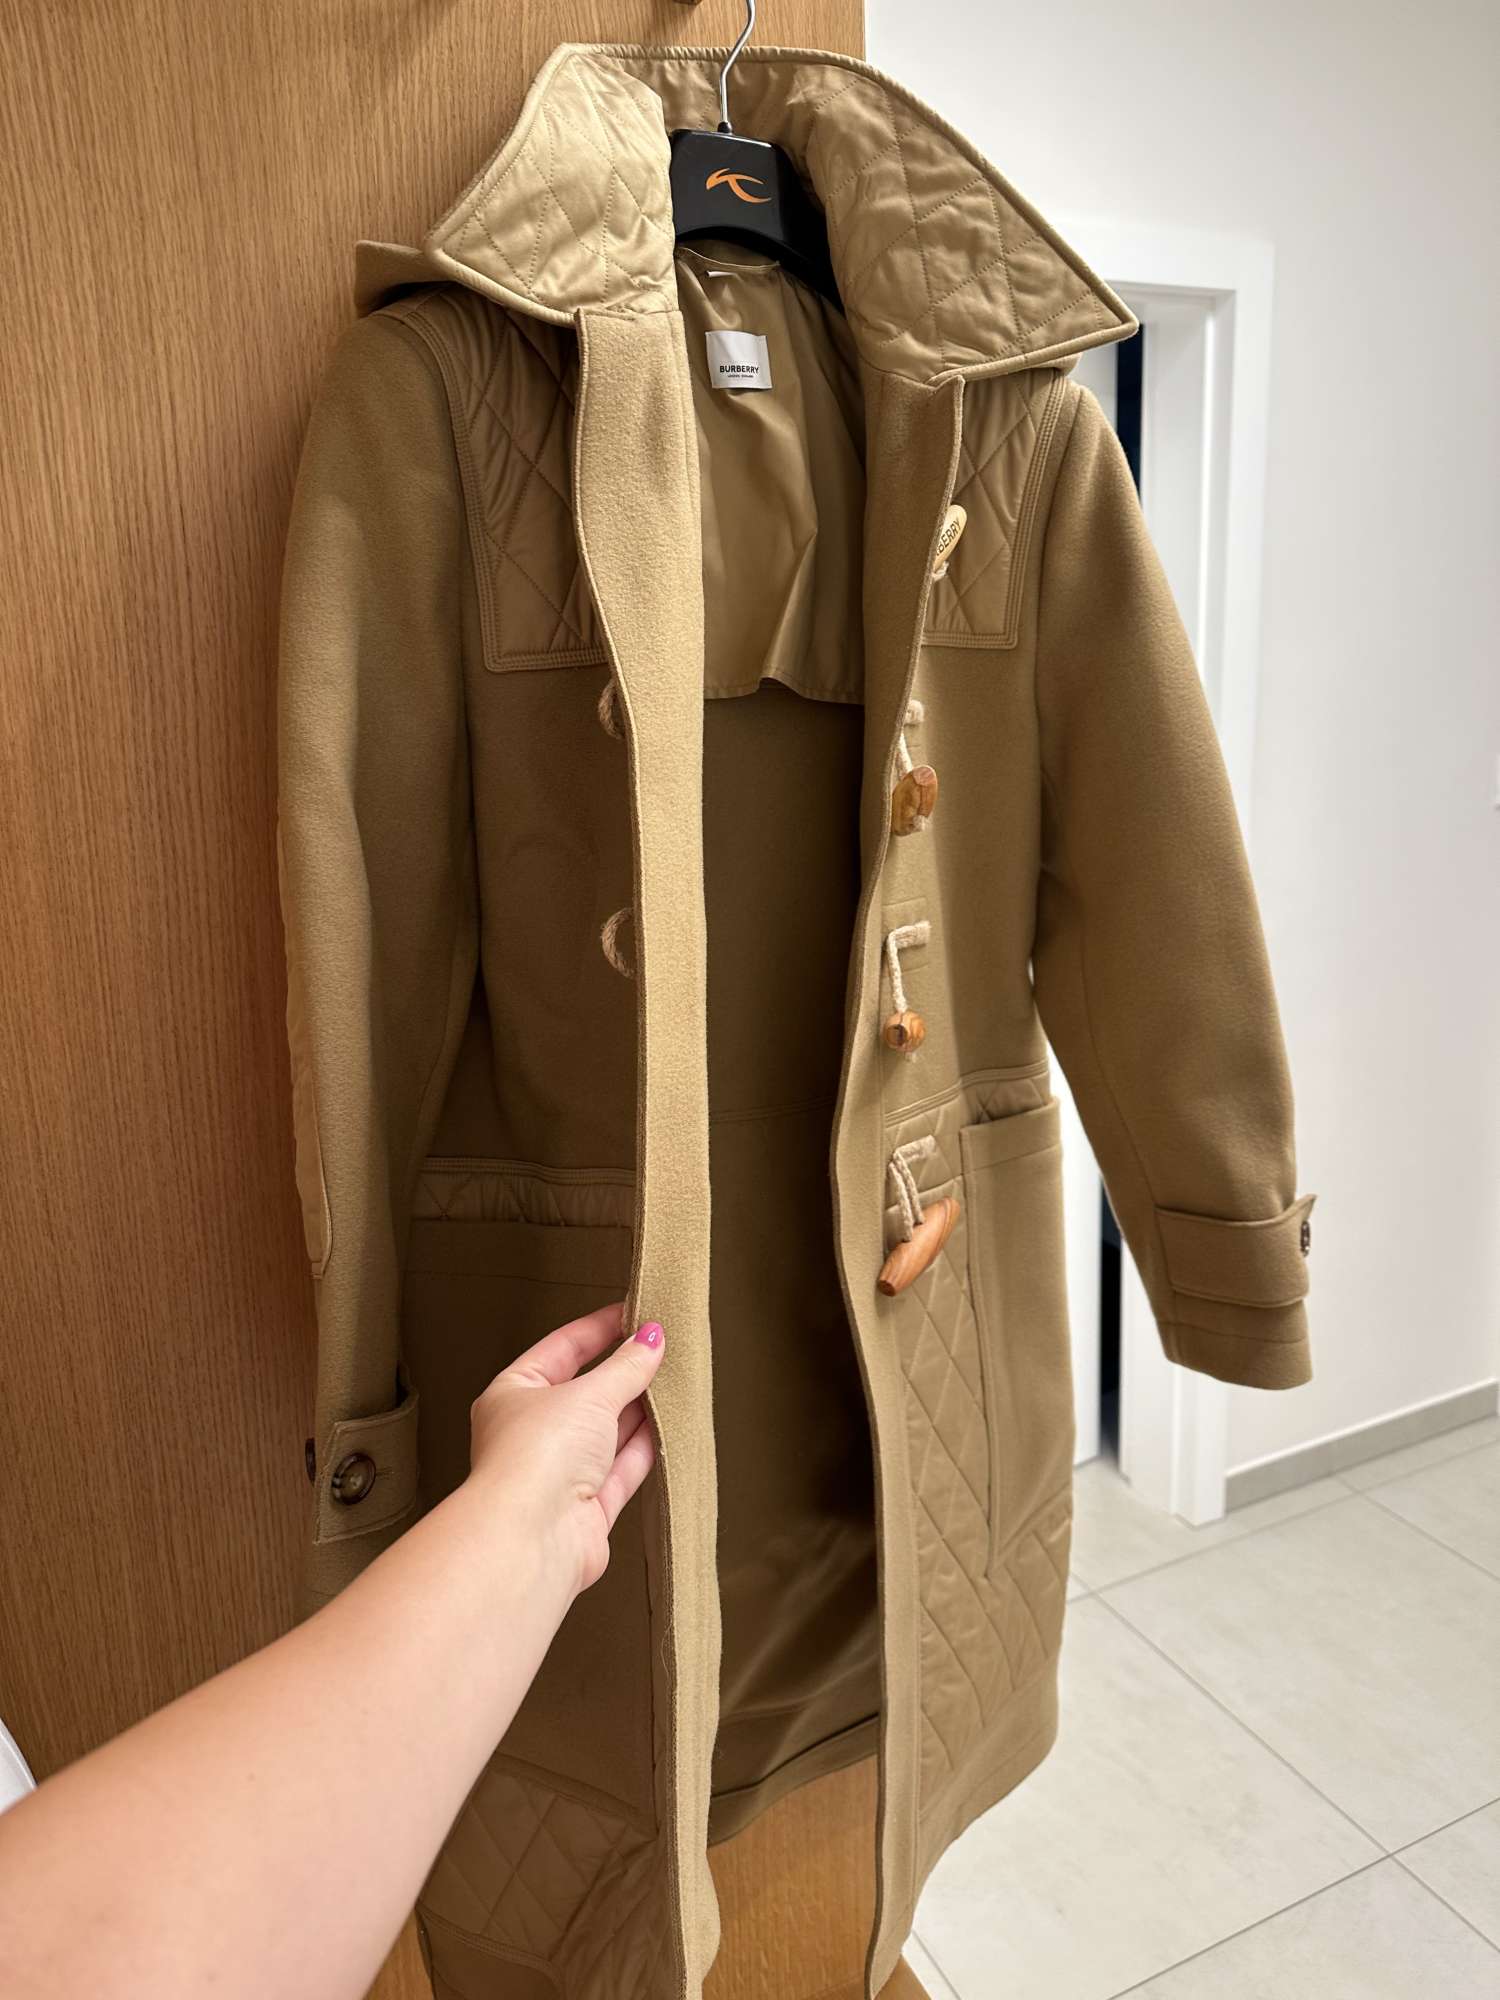 Burberry coat M/L